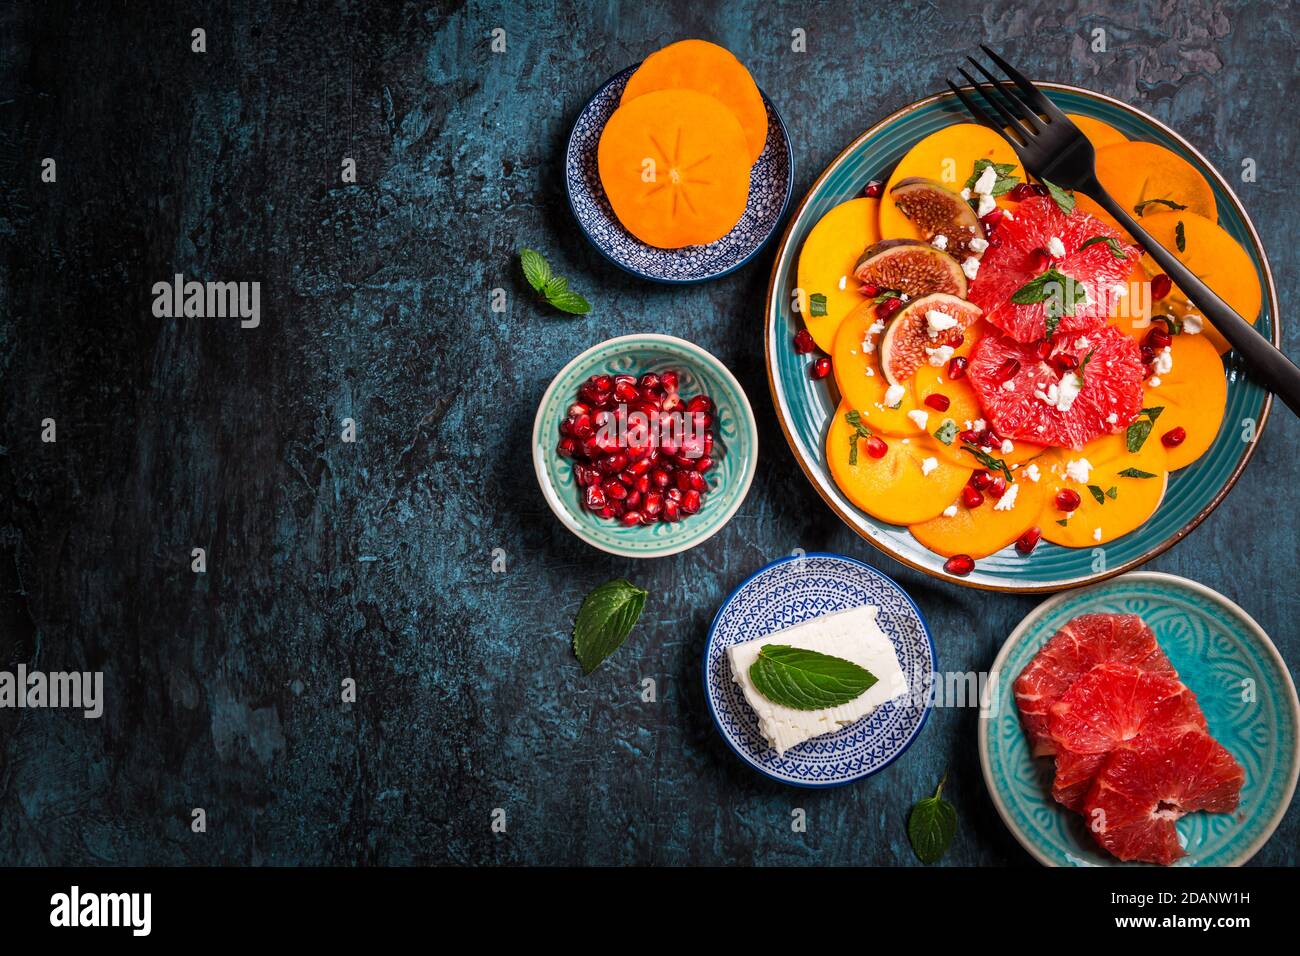 Insalata invernale sana - insalata di carpaccio di Persimmon con melograno, formaggio feta, pompelmo rosa e fichi Foto Stock